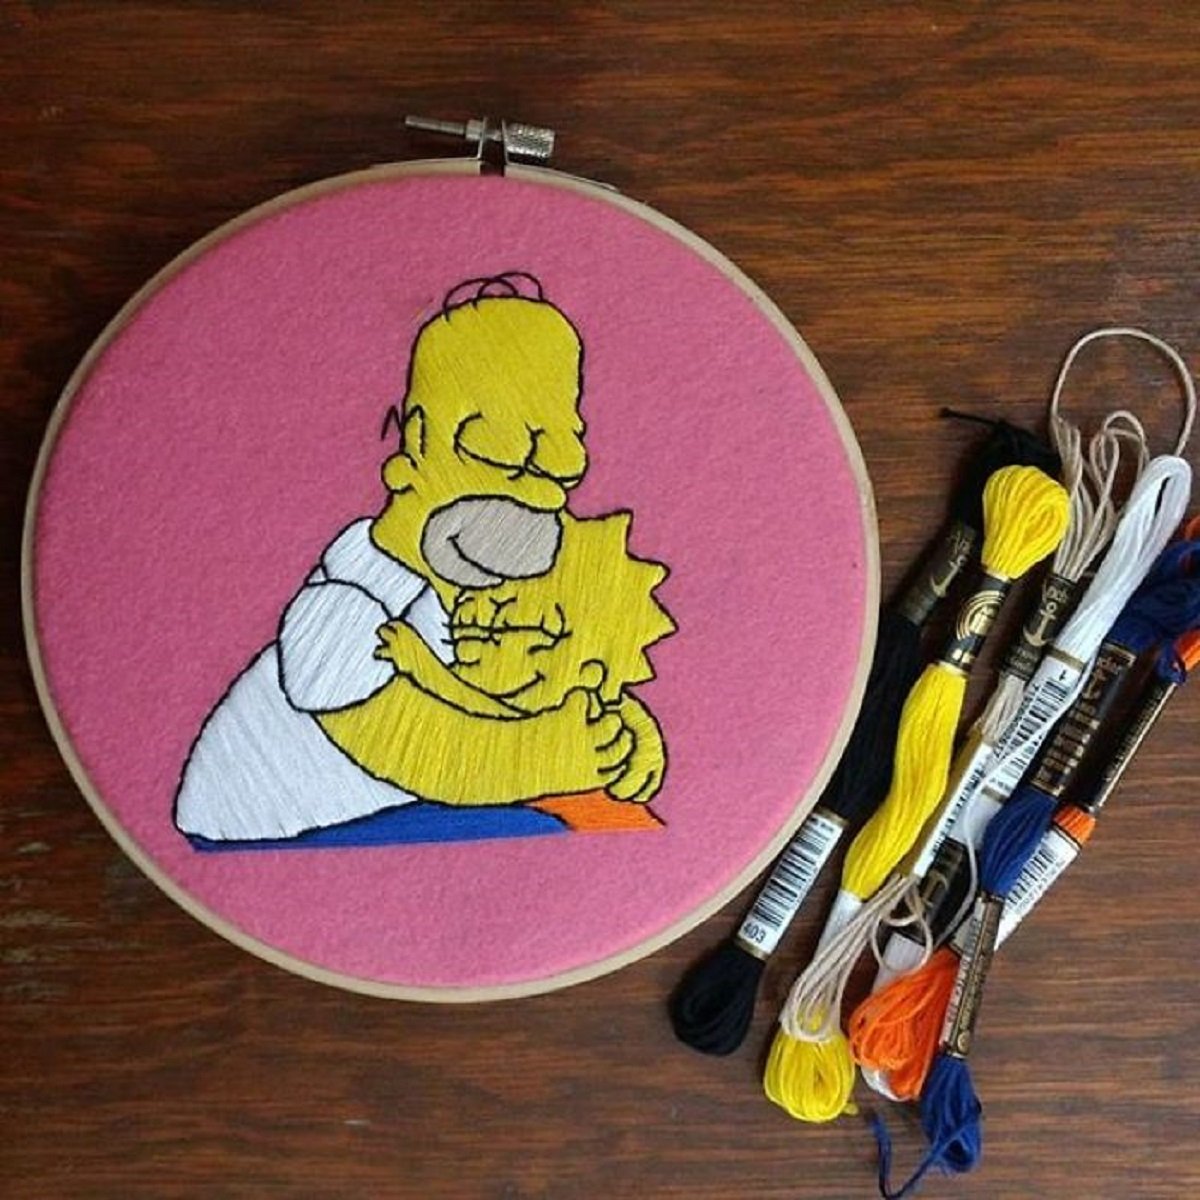 Artista Gabriela Martinez cria bordados de cenas de Os Simpsons 20